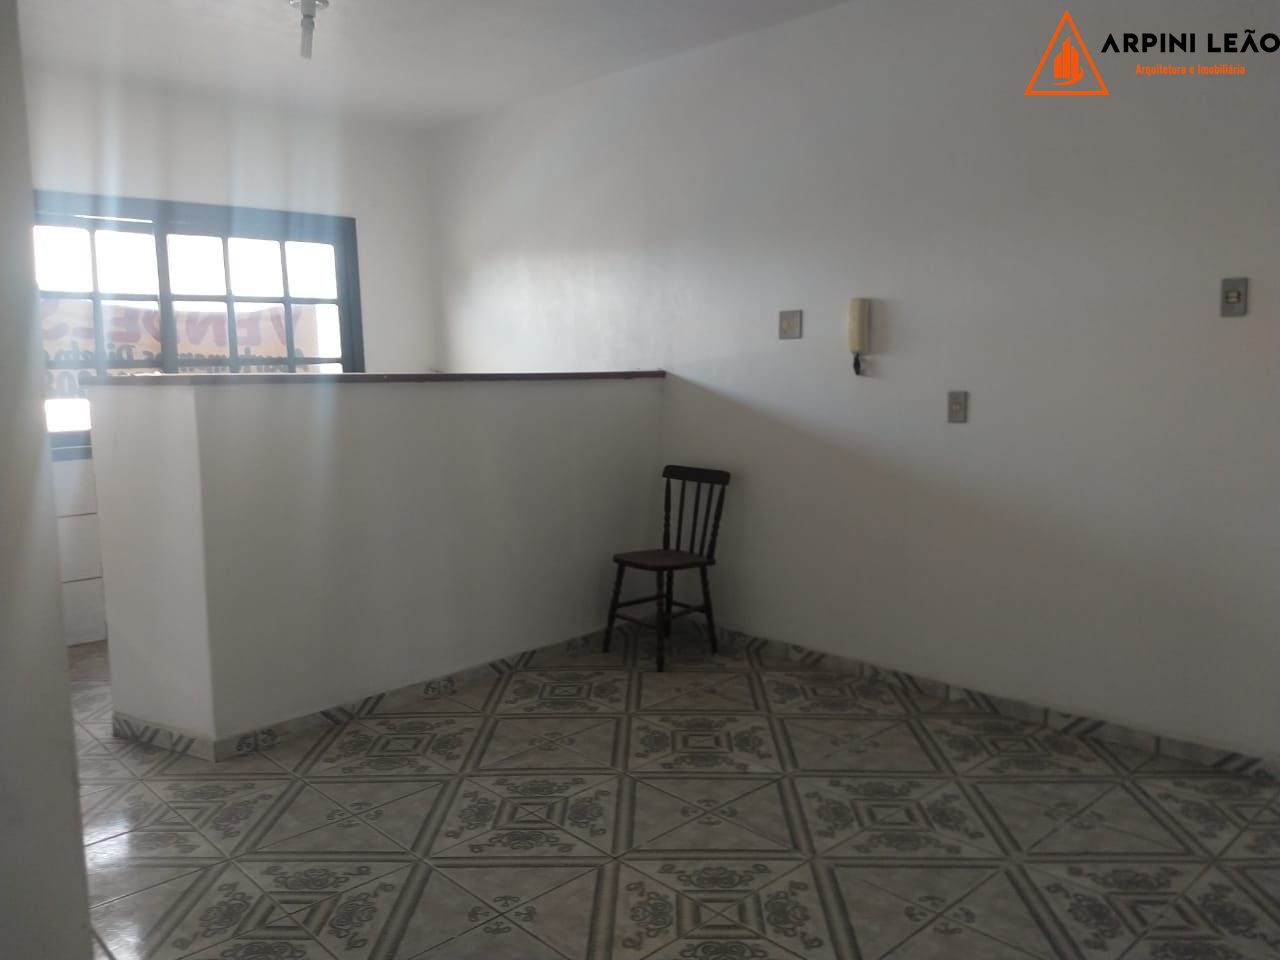 Apartamento com 1 Dormitórios à venda, 42 m² por R$ 95.000,00